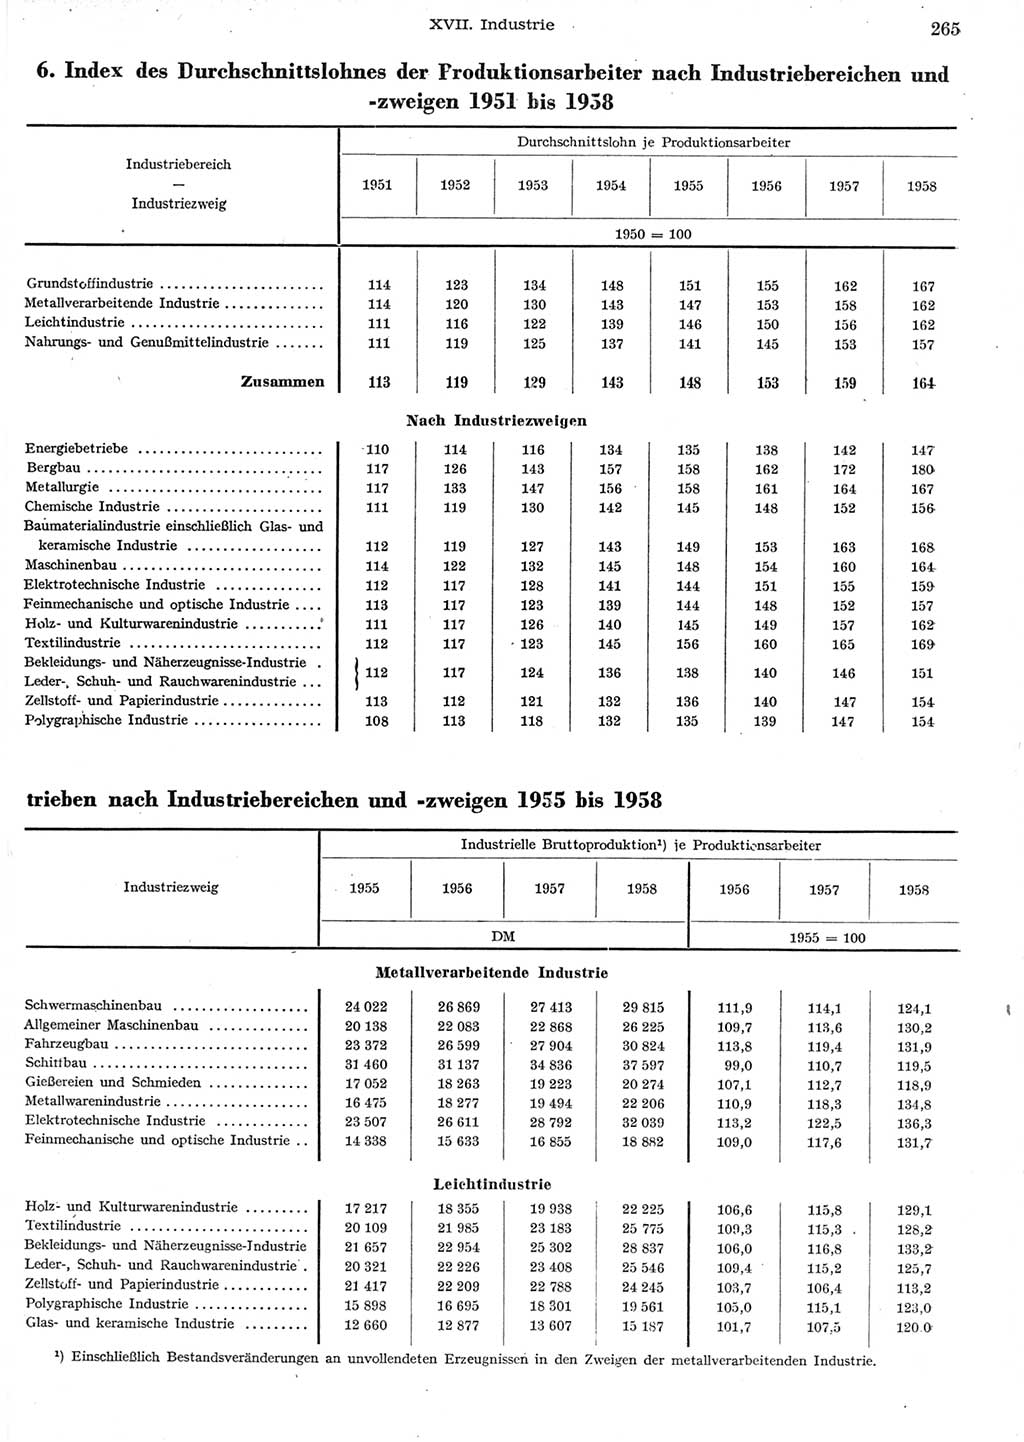 Statistisches Jahrbuch der Deutschen Demokratischen Republik (DDR) 1958, Seite 265 (Stat. Jb. DDR 1958, S. 265)